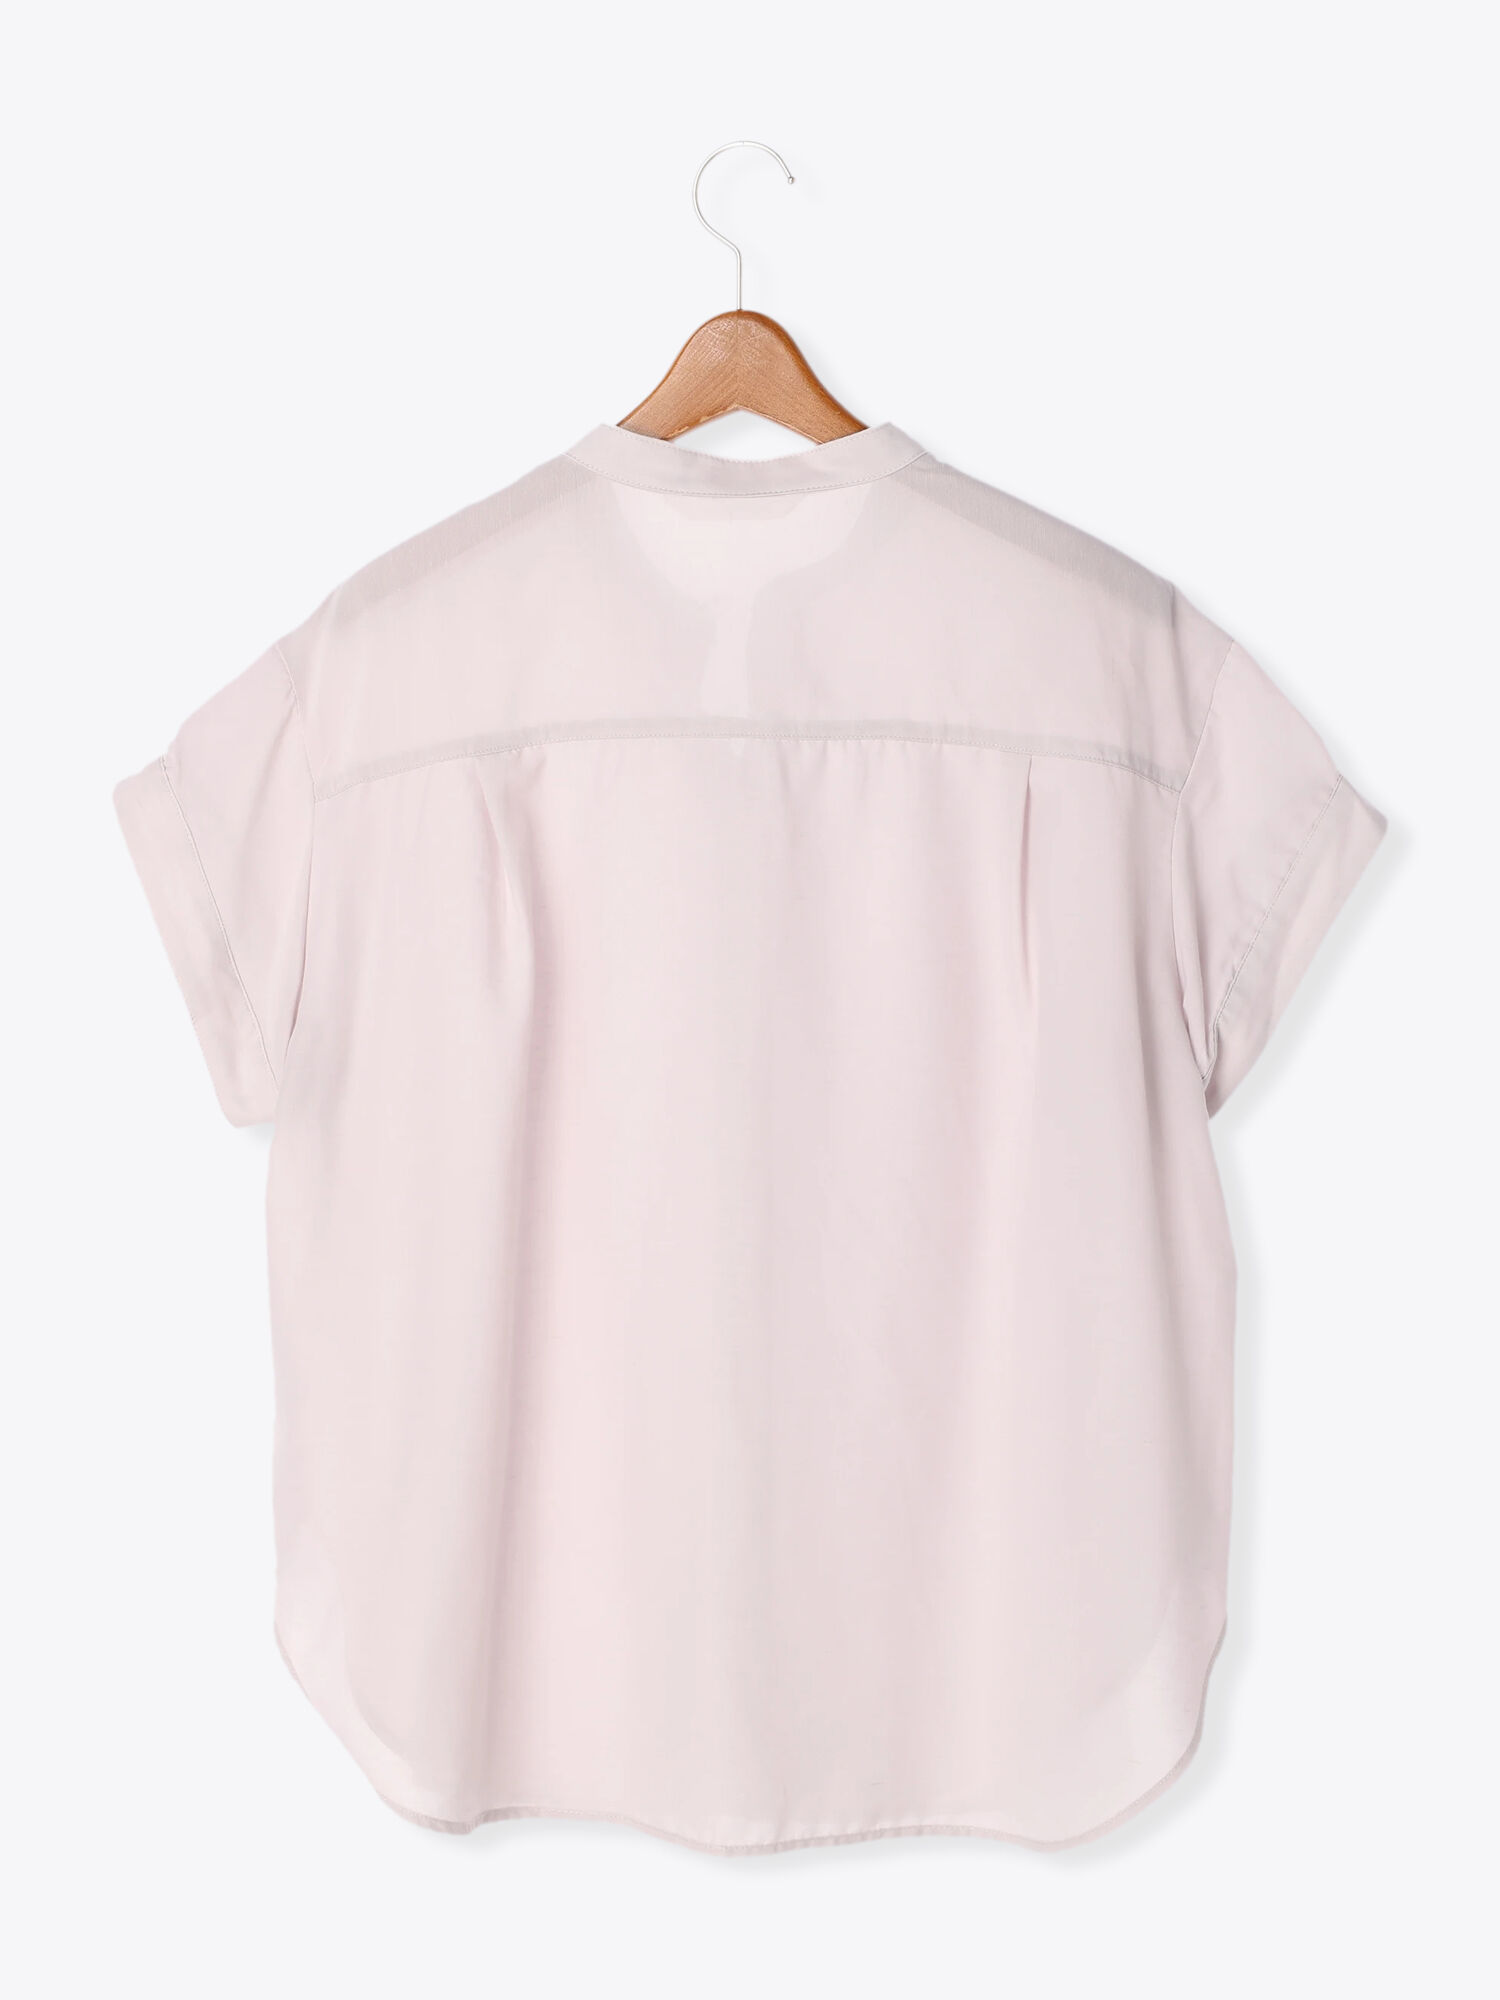 セール イージーケア しわになりにくい バンドカラーシャツ オフホワイト グレー チャコールグレー トップス シャツ ブラウス Lugnoncure ルノンキュール 公式通販